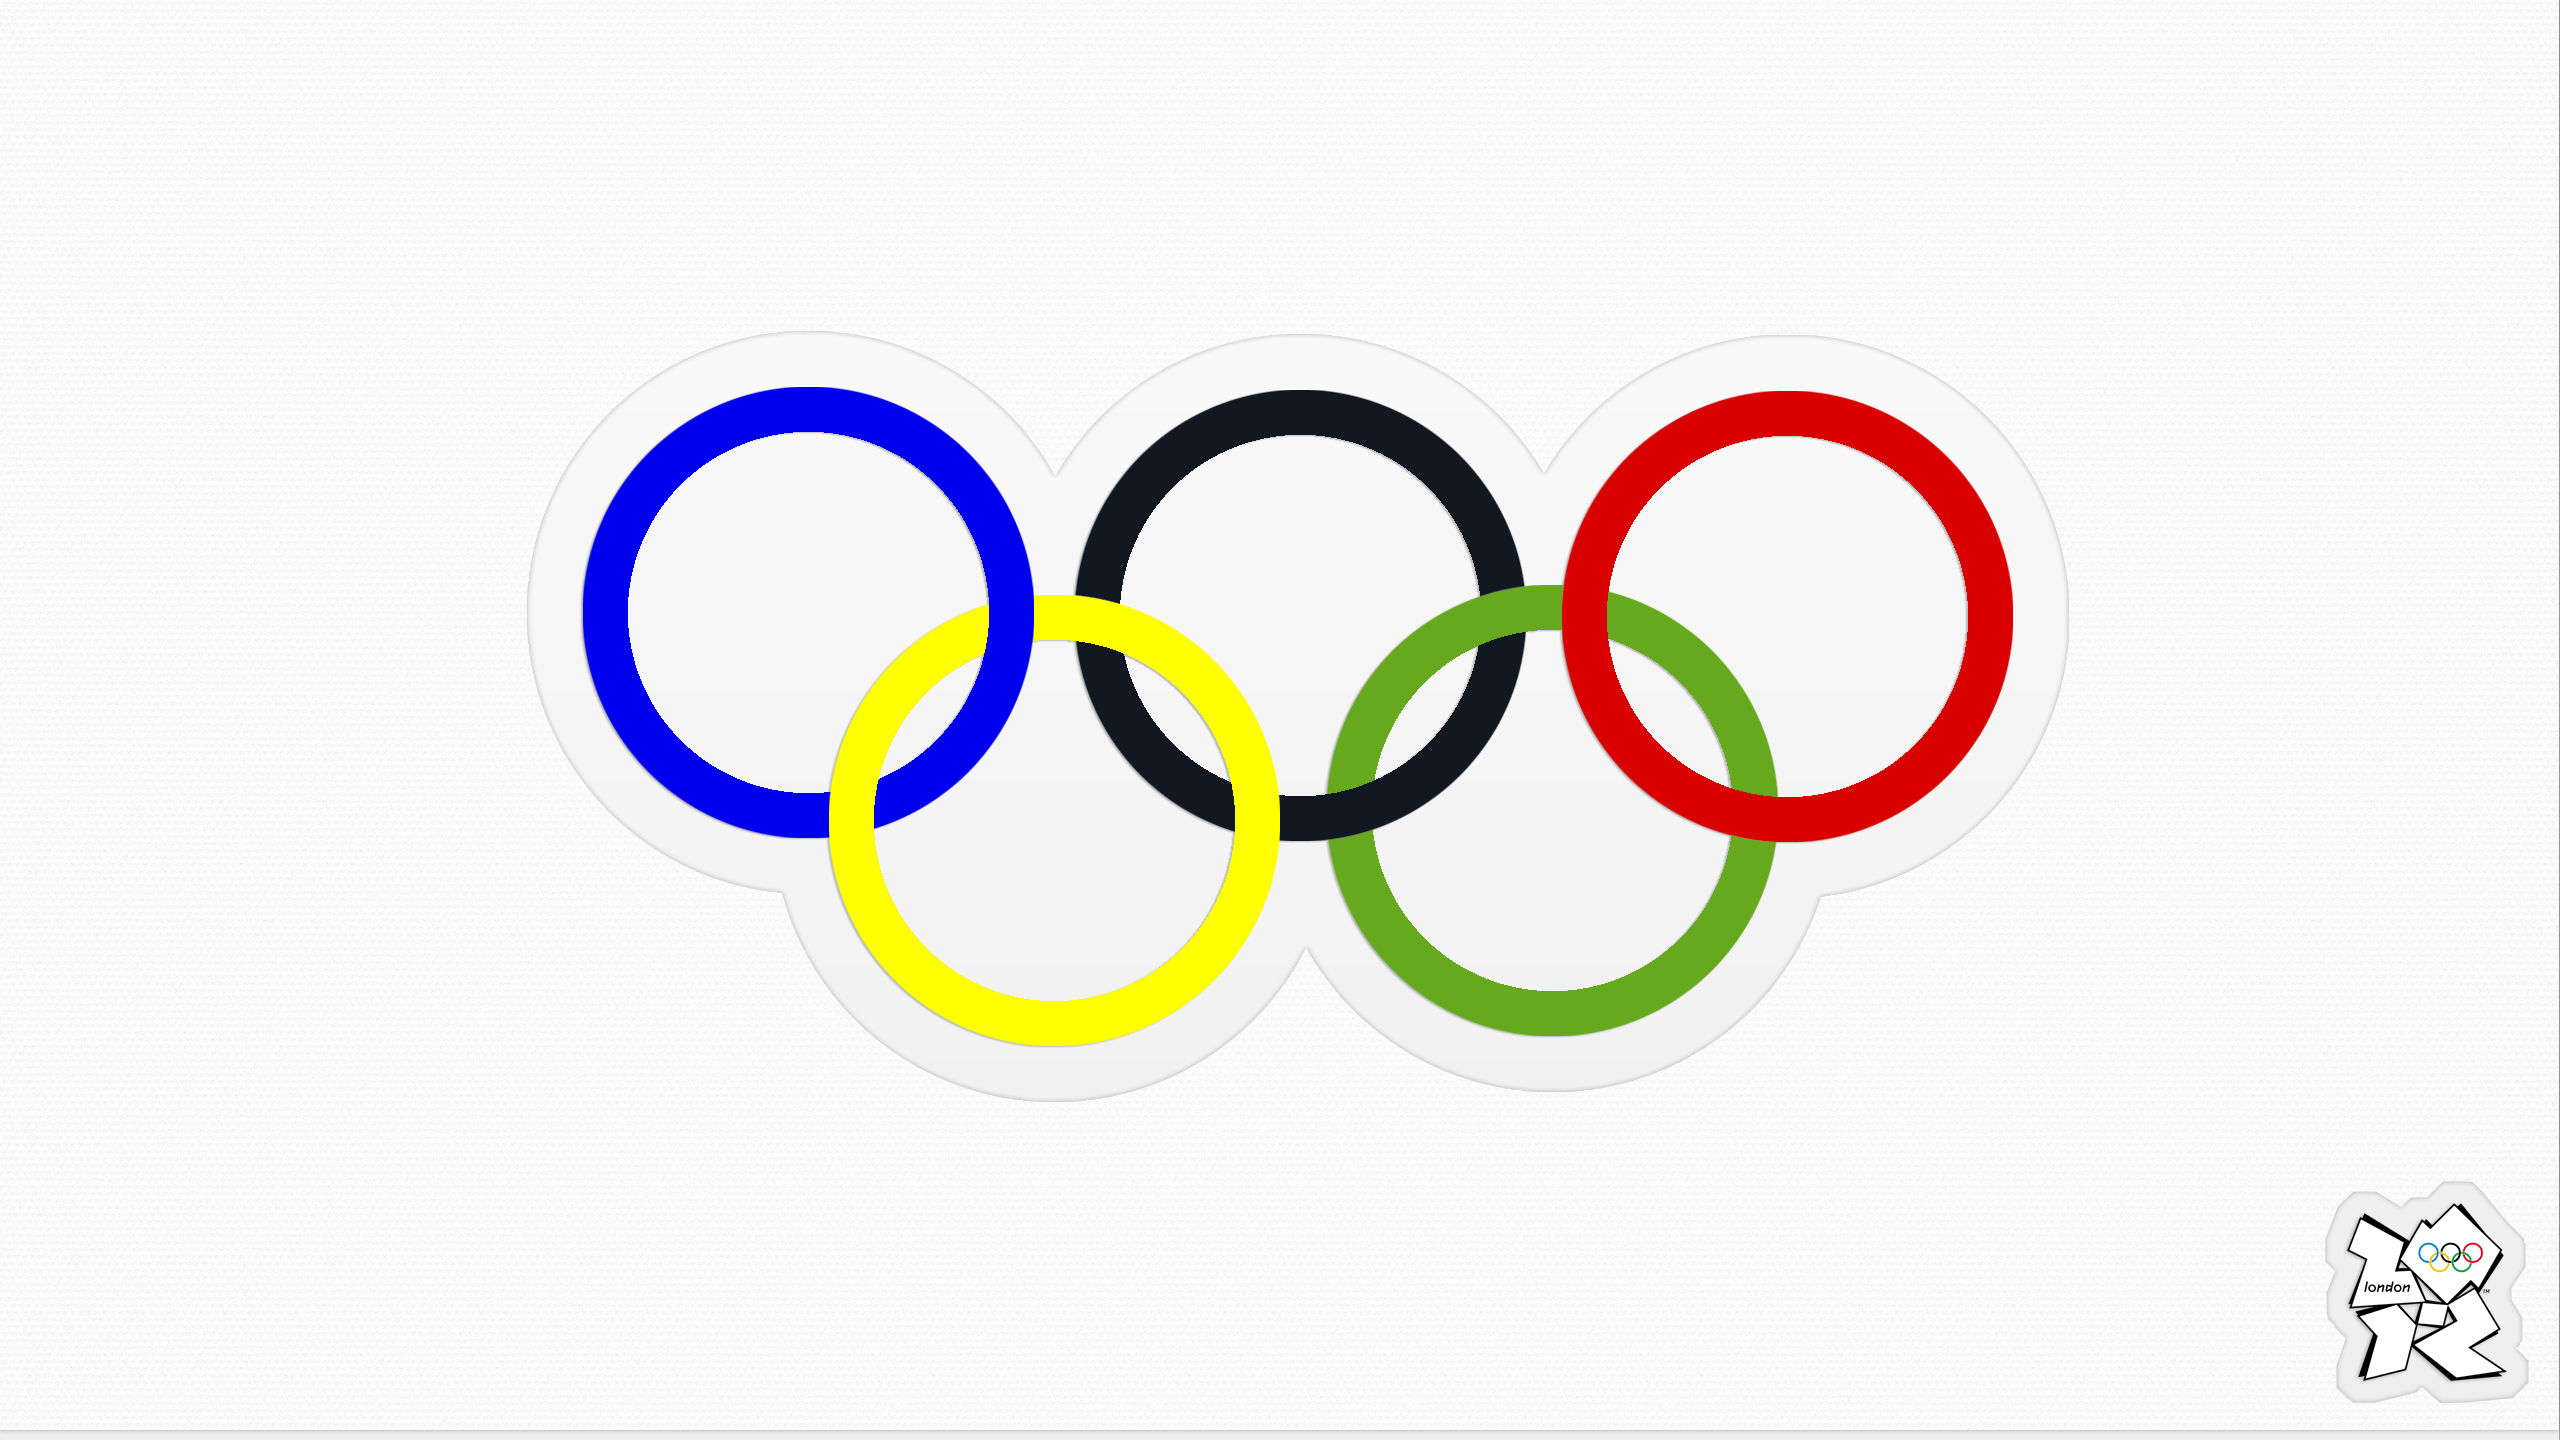 Олимпийские кольца красивые